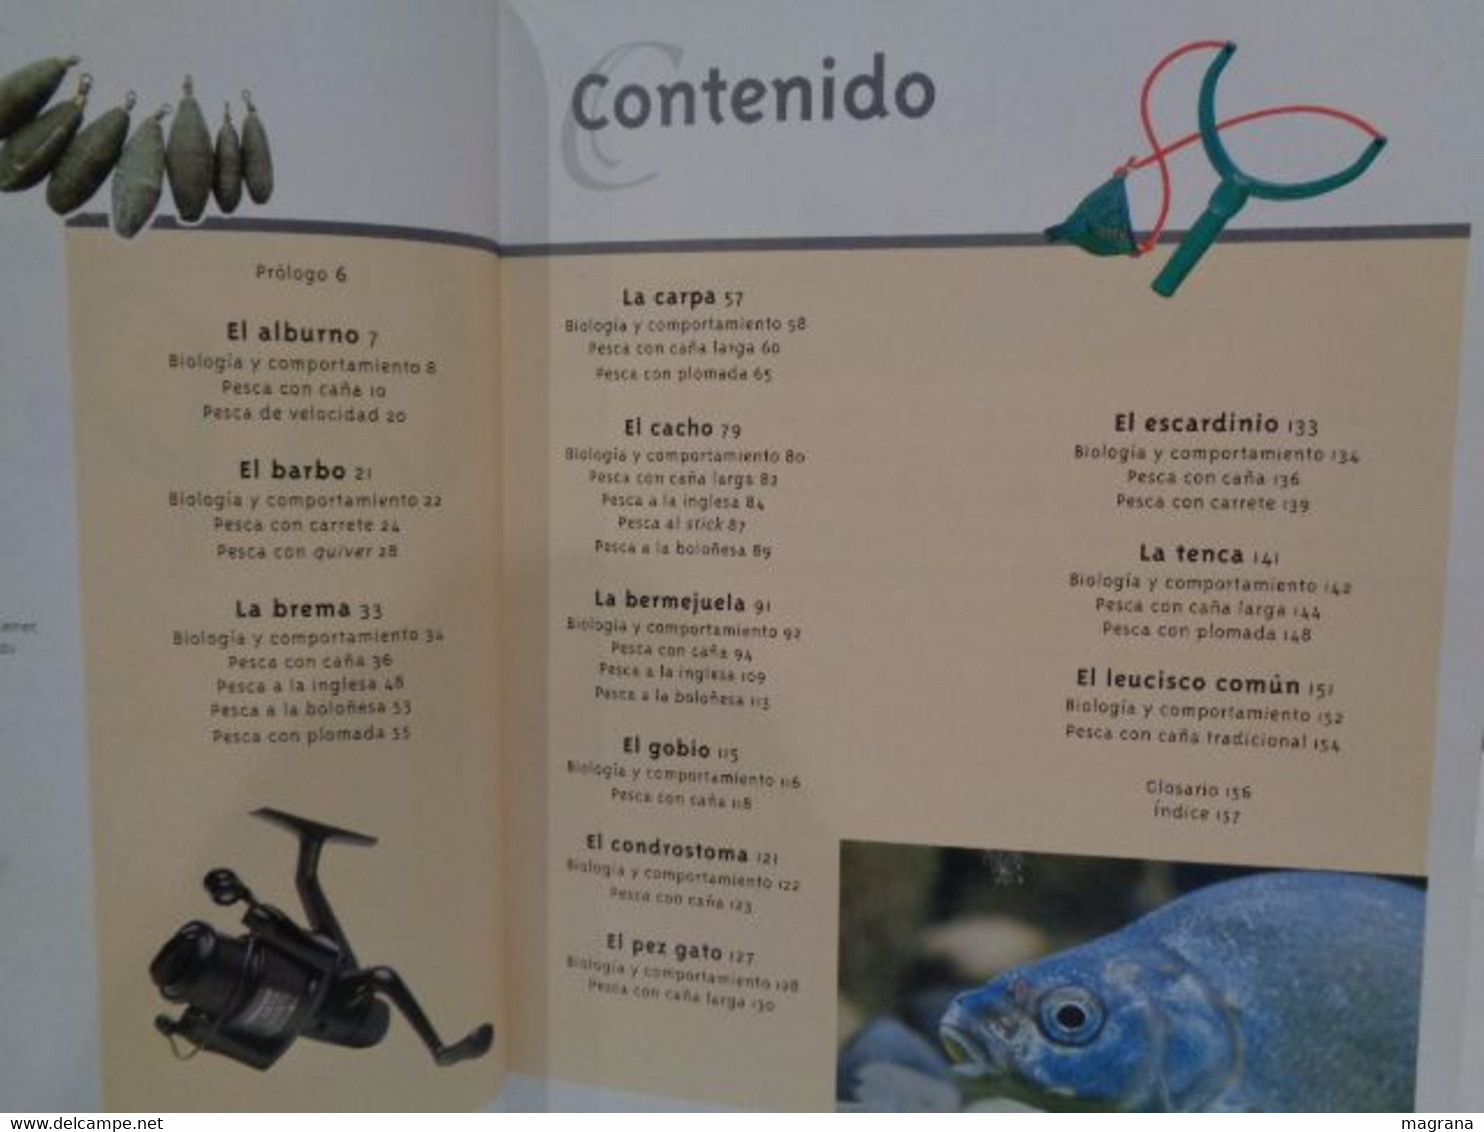 La Pesca Al Coup. Patrick Guillote. Guías Ilustradas De Pesca. Ediciones Tikal. 2003. 159 Pp. - Lifestyle